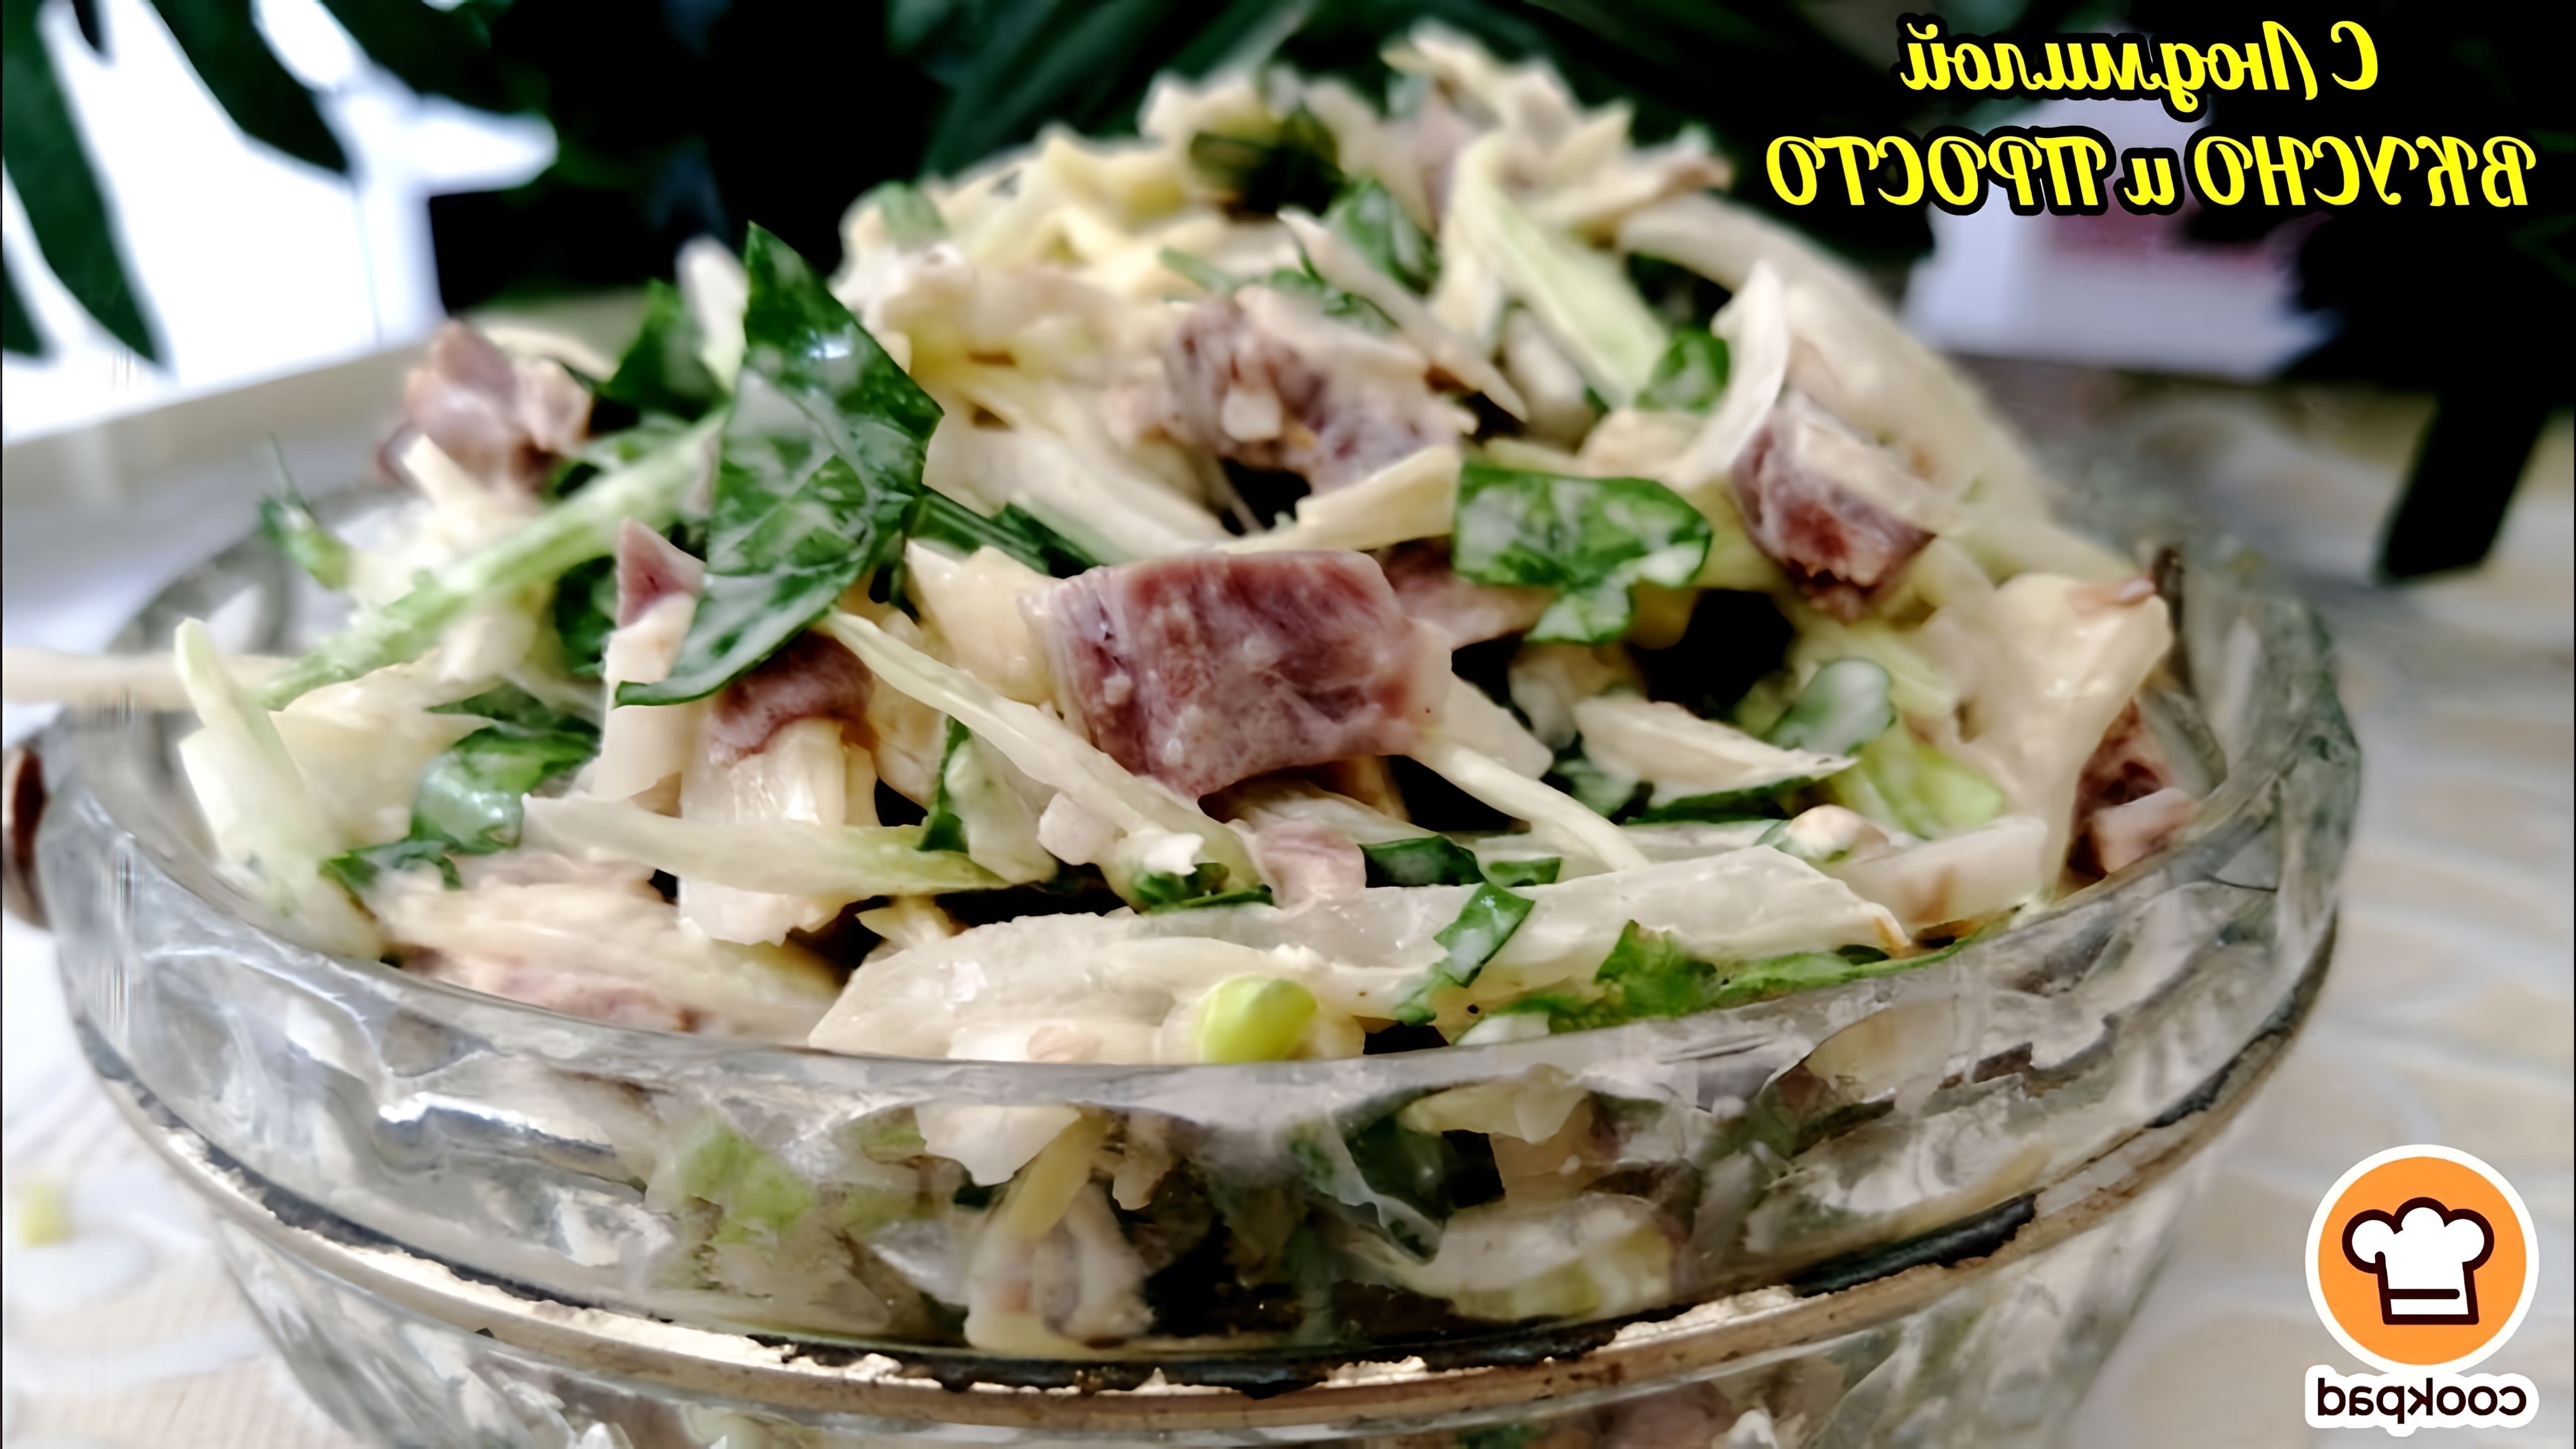 В этом видео демонстрируется рецепт нового салата из свежей капусты с отварным мясом